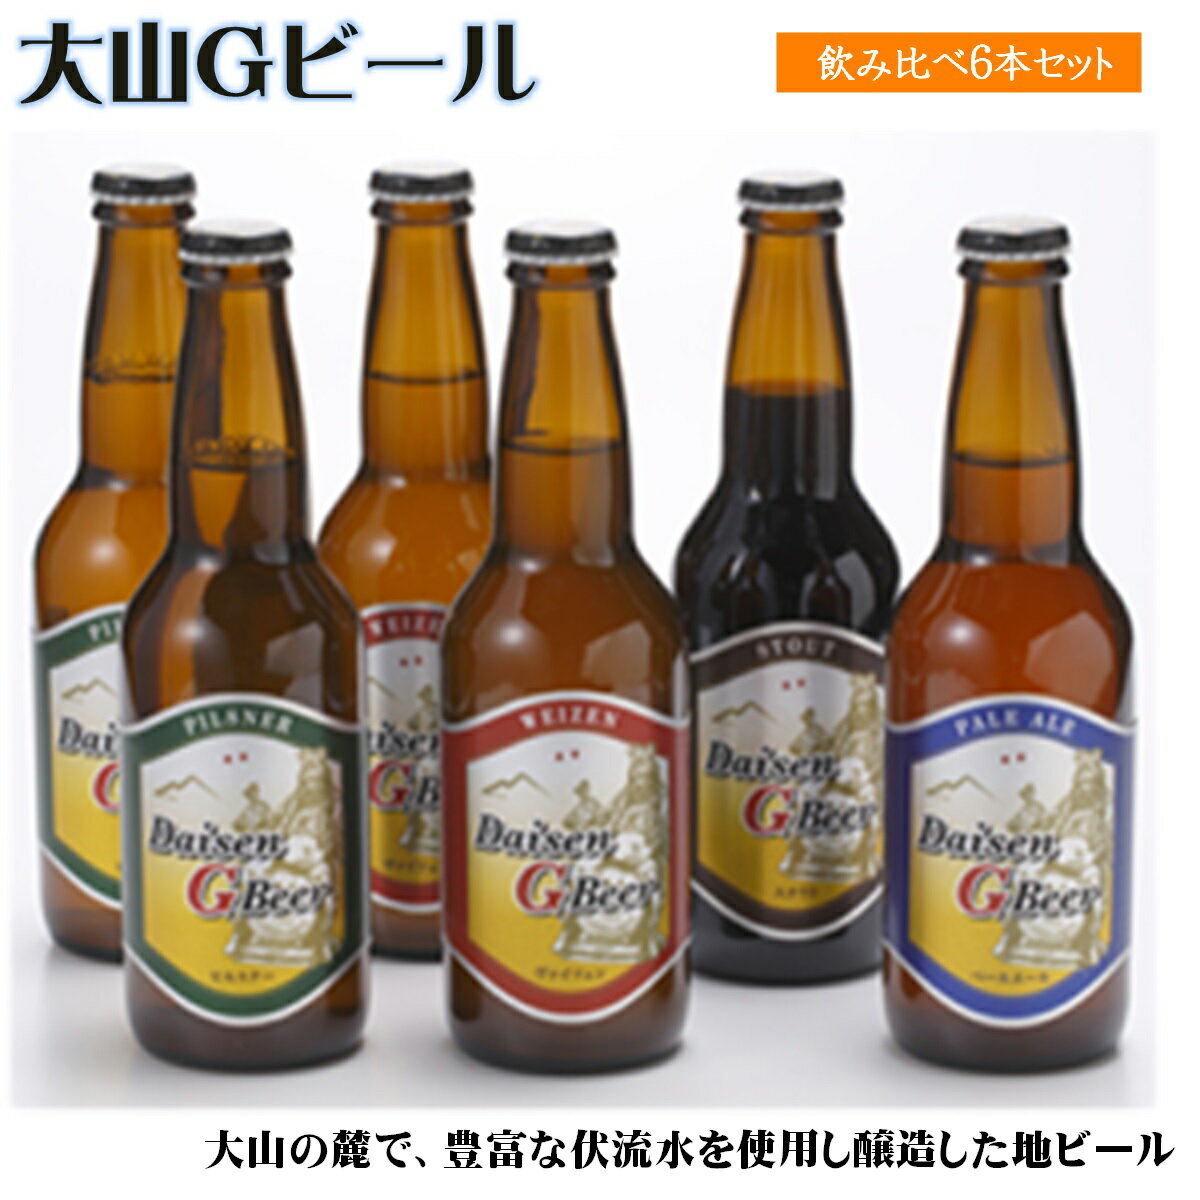 大山Gビール飲み比べ6本セット[22-010-010]地ビール 10000円